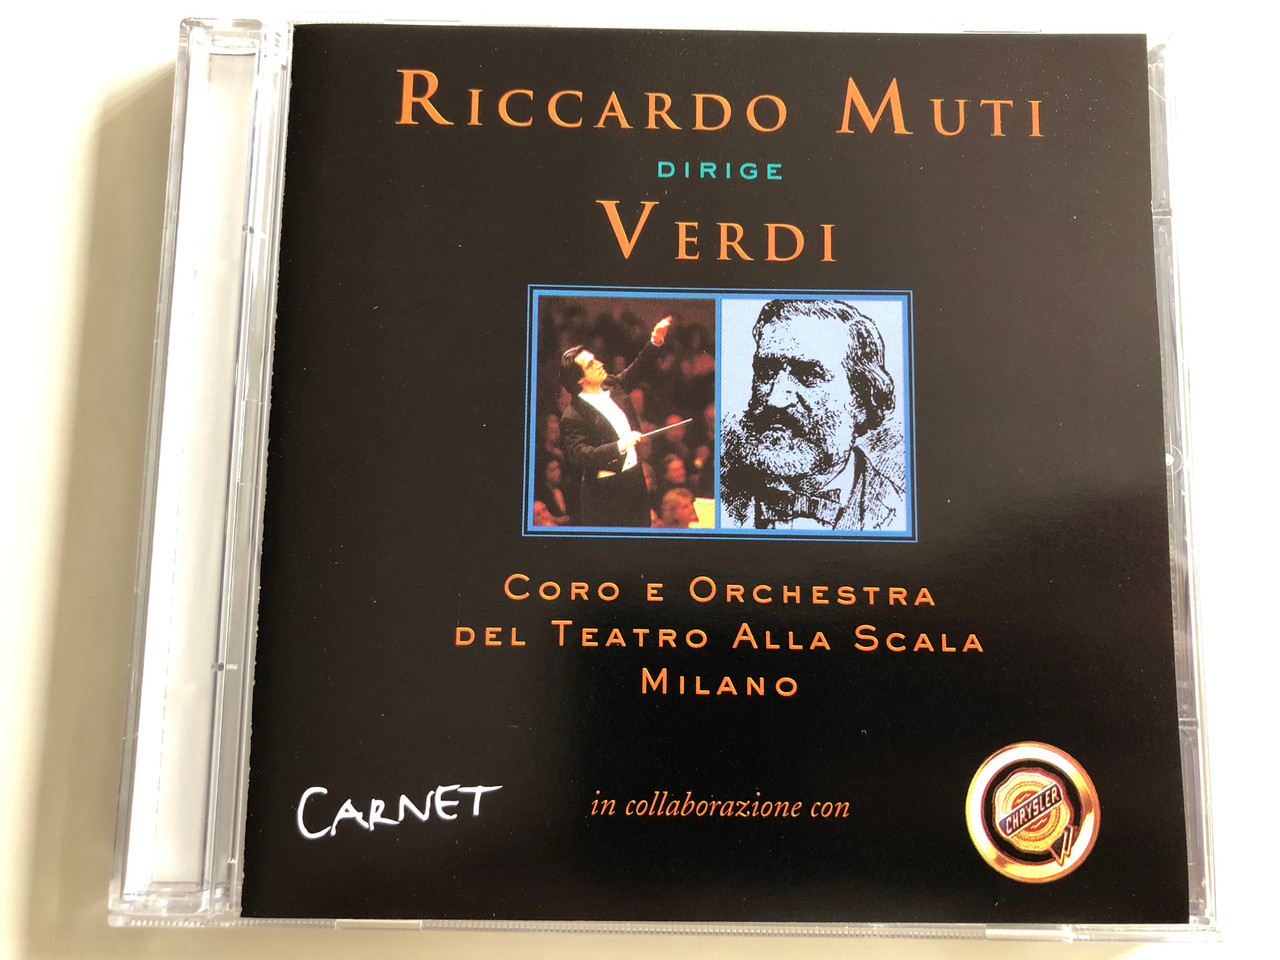 Riccardo Muti Dirige Verdi / Coro E Orchestra Del Teatro Alla Scala, Milano  / EMI Records Ltd. Audio CD 1997 / 7243 4 71748 2 7 - bibleinmylanguage